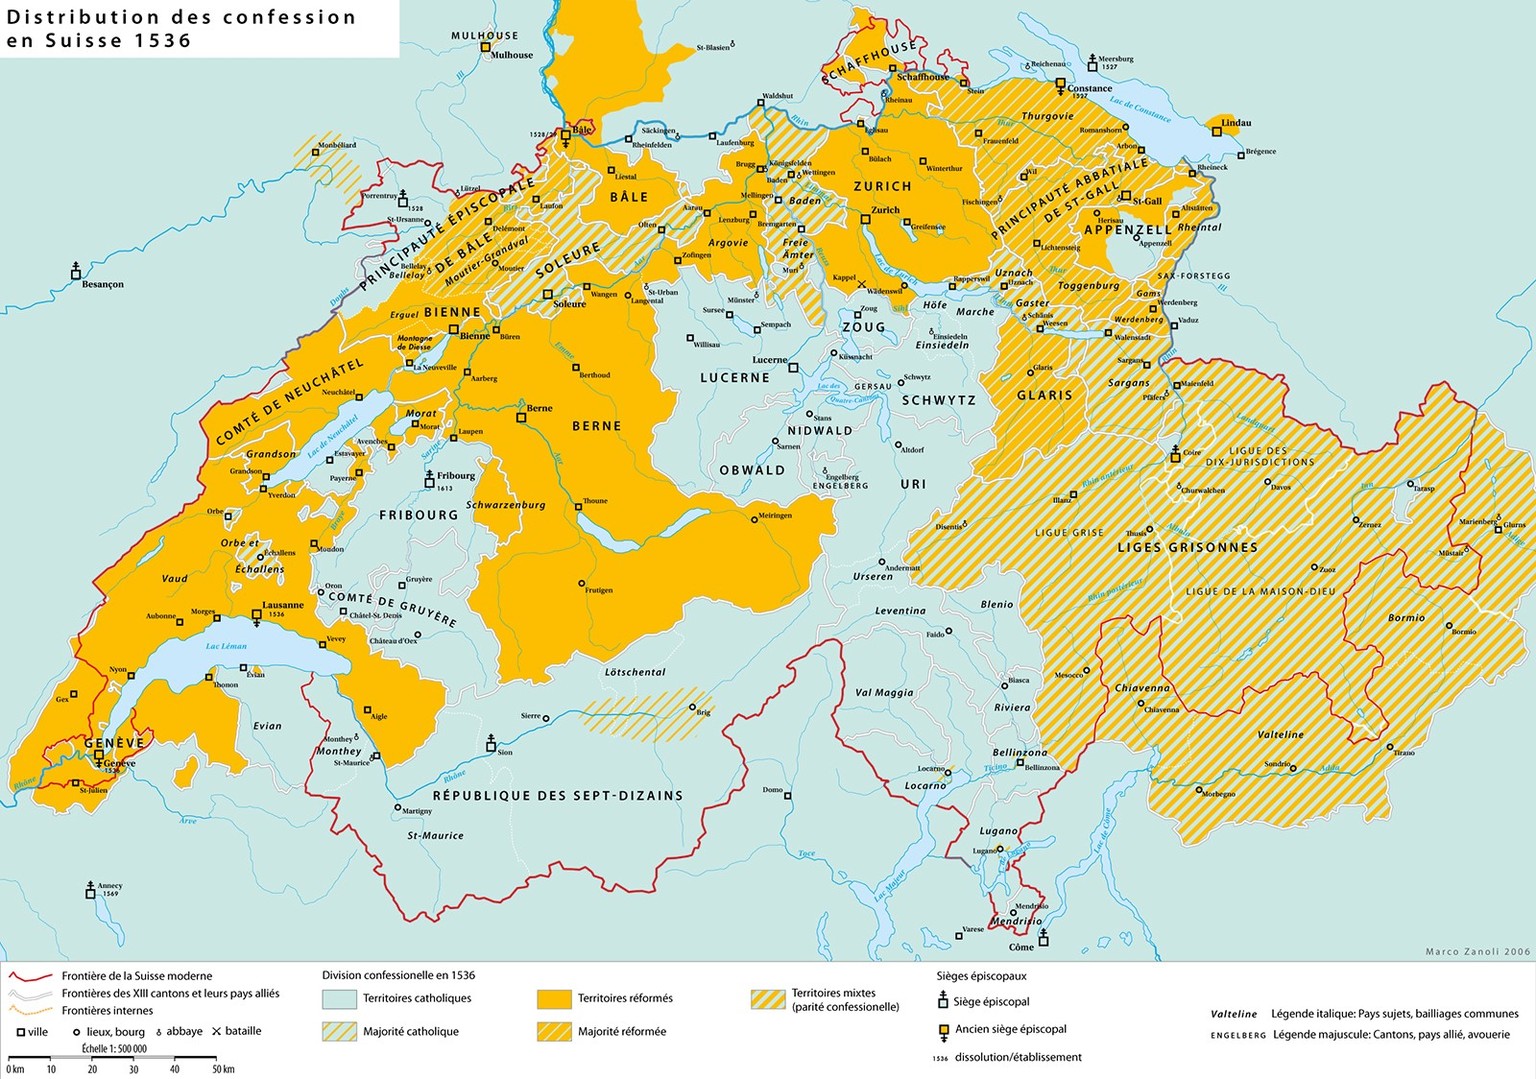 Les frontières religieuses au sein de la Confédération suisse autour de 1536, après la Réforme.
https://commons.wikimedia.org/wiki/File:Religion_map_of_Switzerland_in_1536_-_fr.png